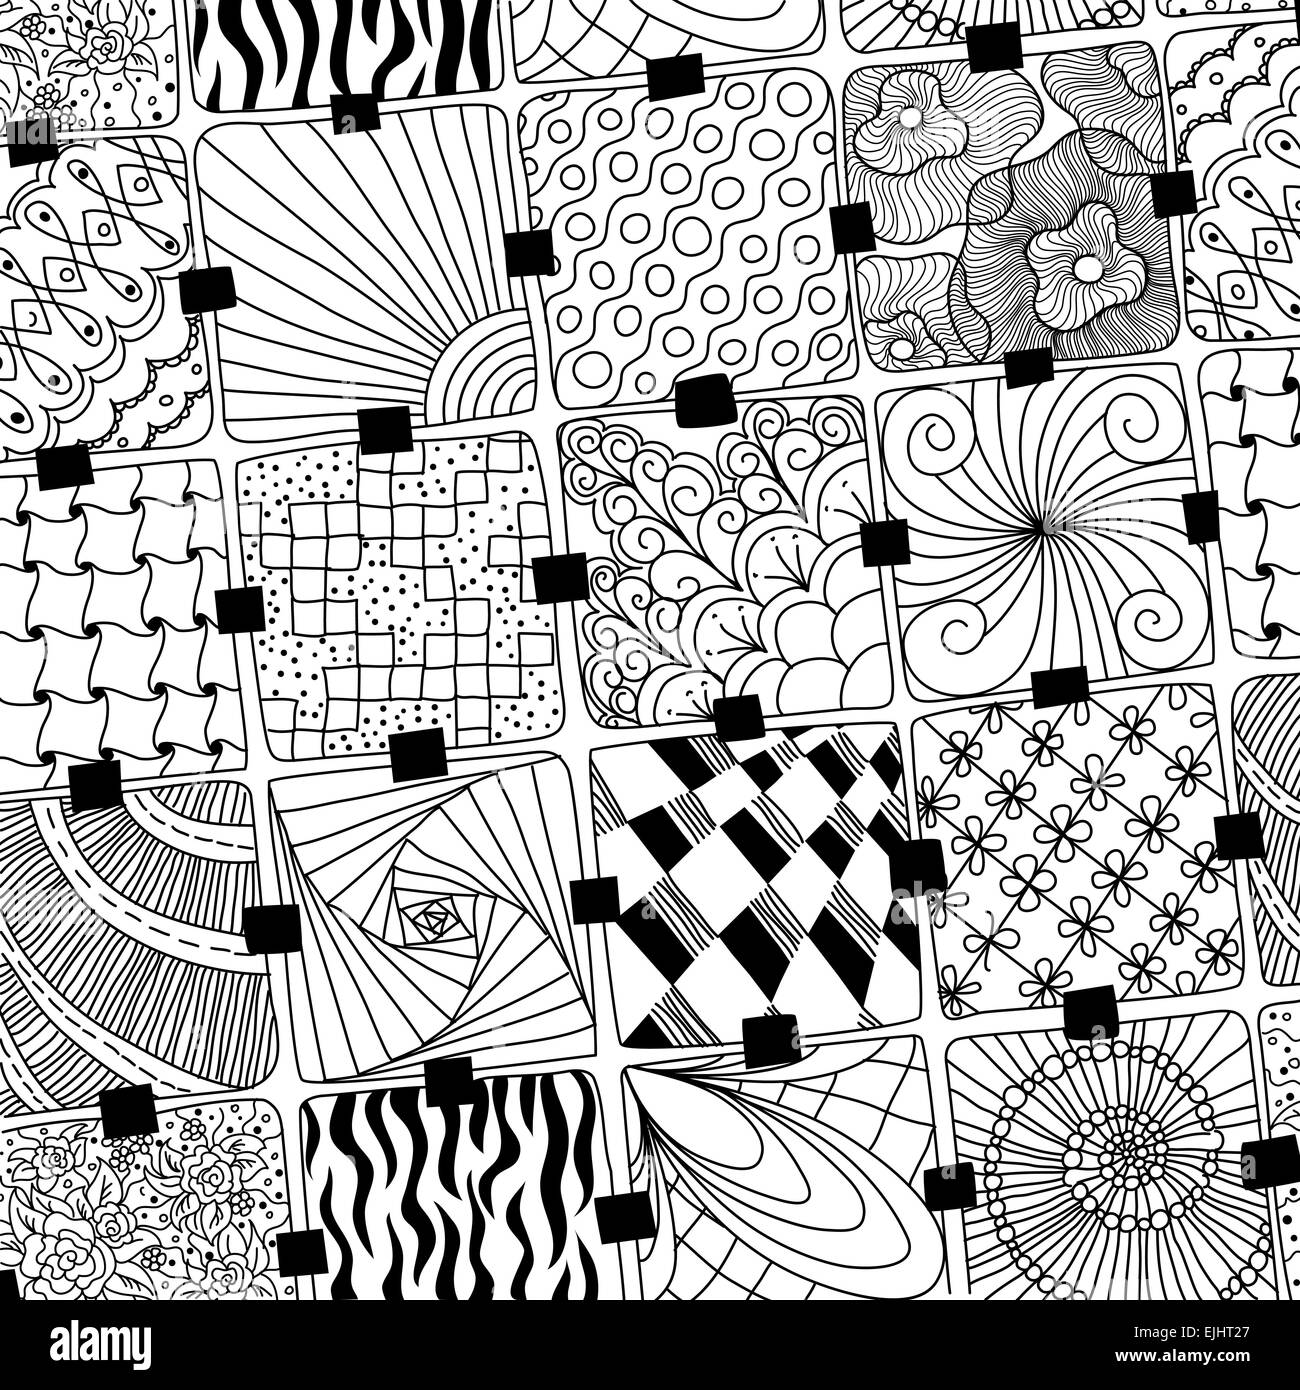 vector doodles pattern zentangle Stock Photo